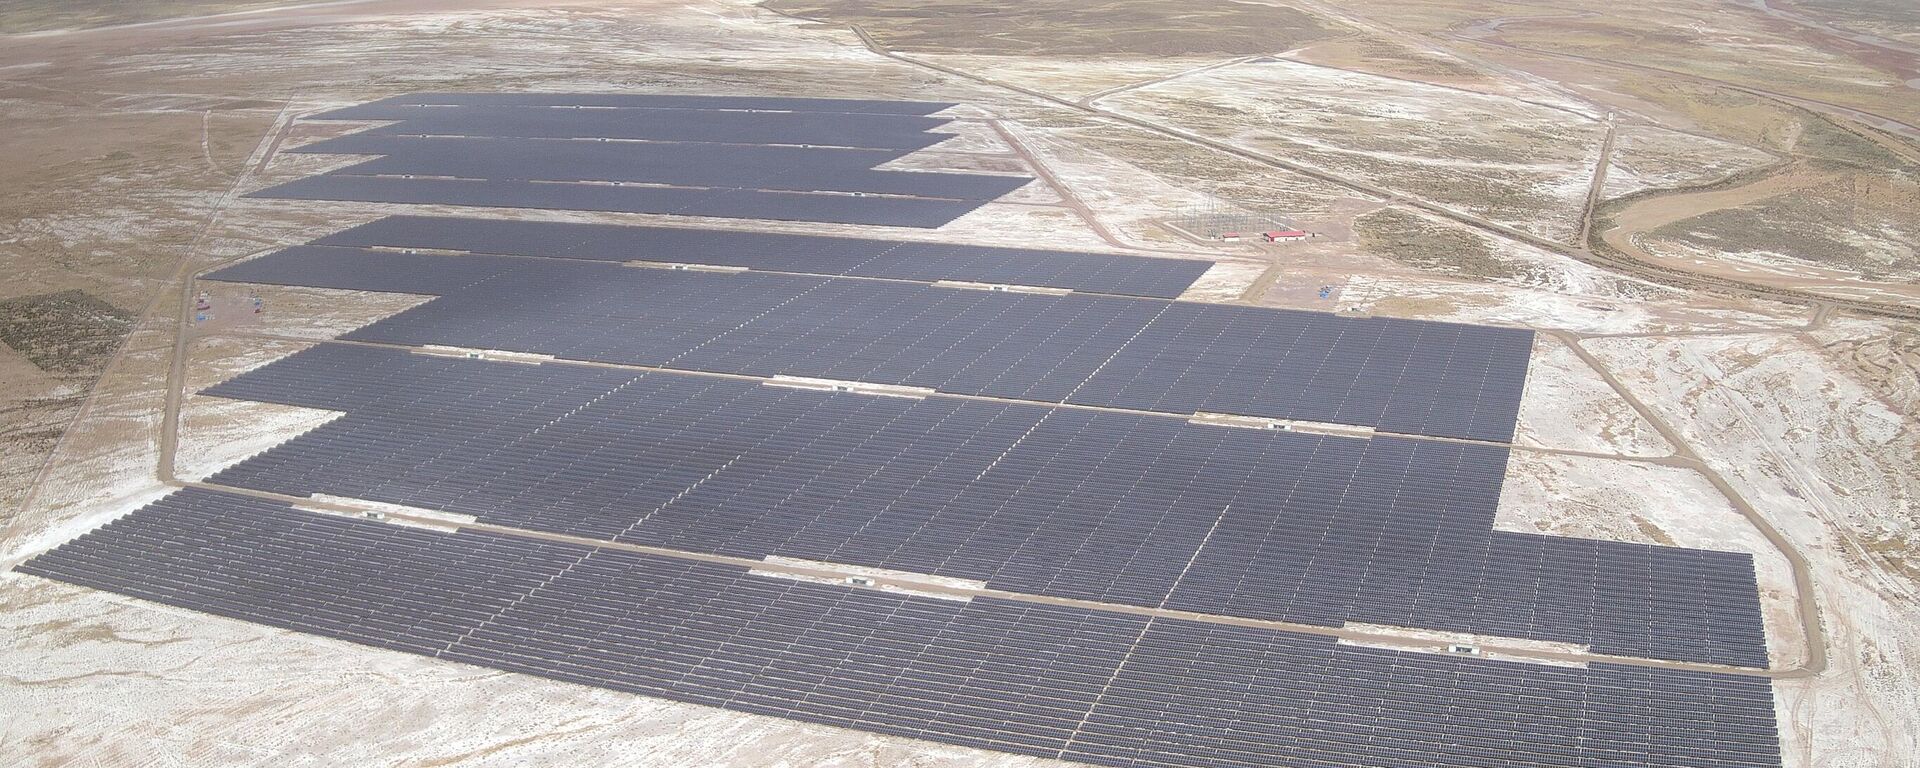 Planta solar fotovoltaica de Oruro, Bolivia - Sputnik Mundo, 1920, 08.09.2022